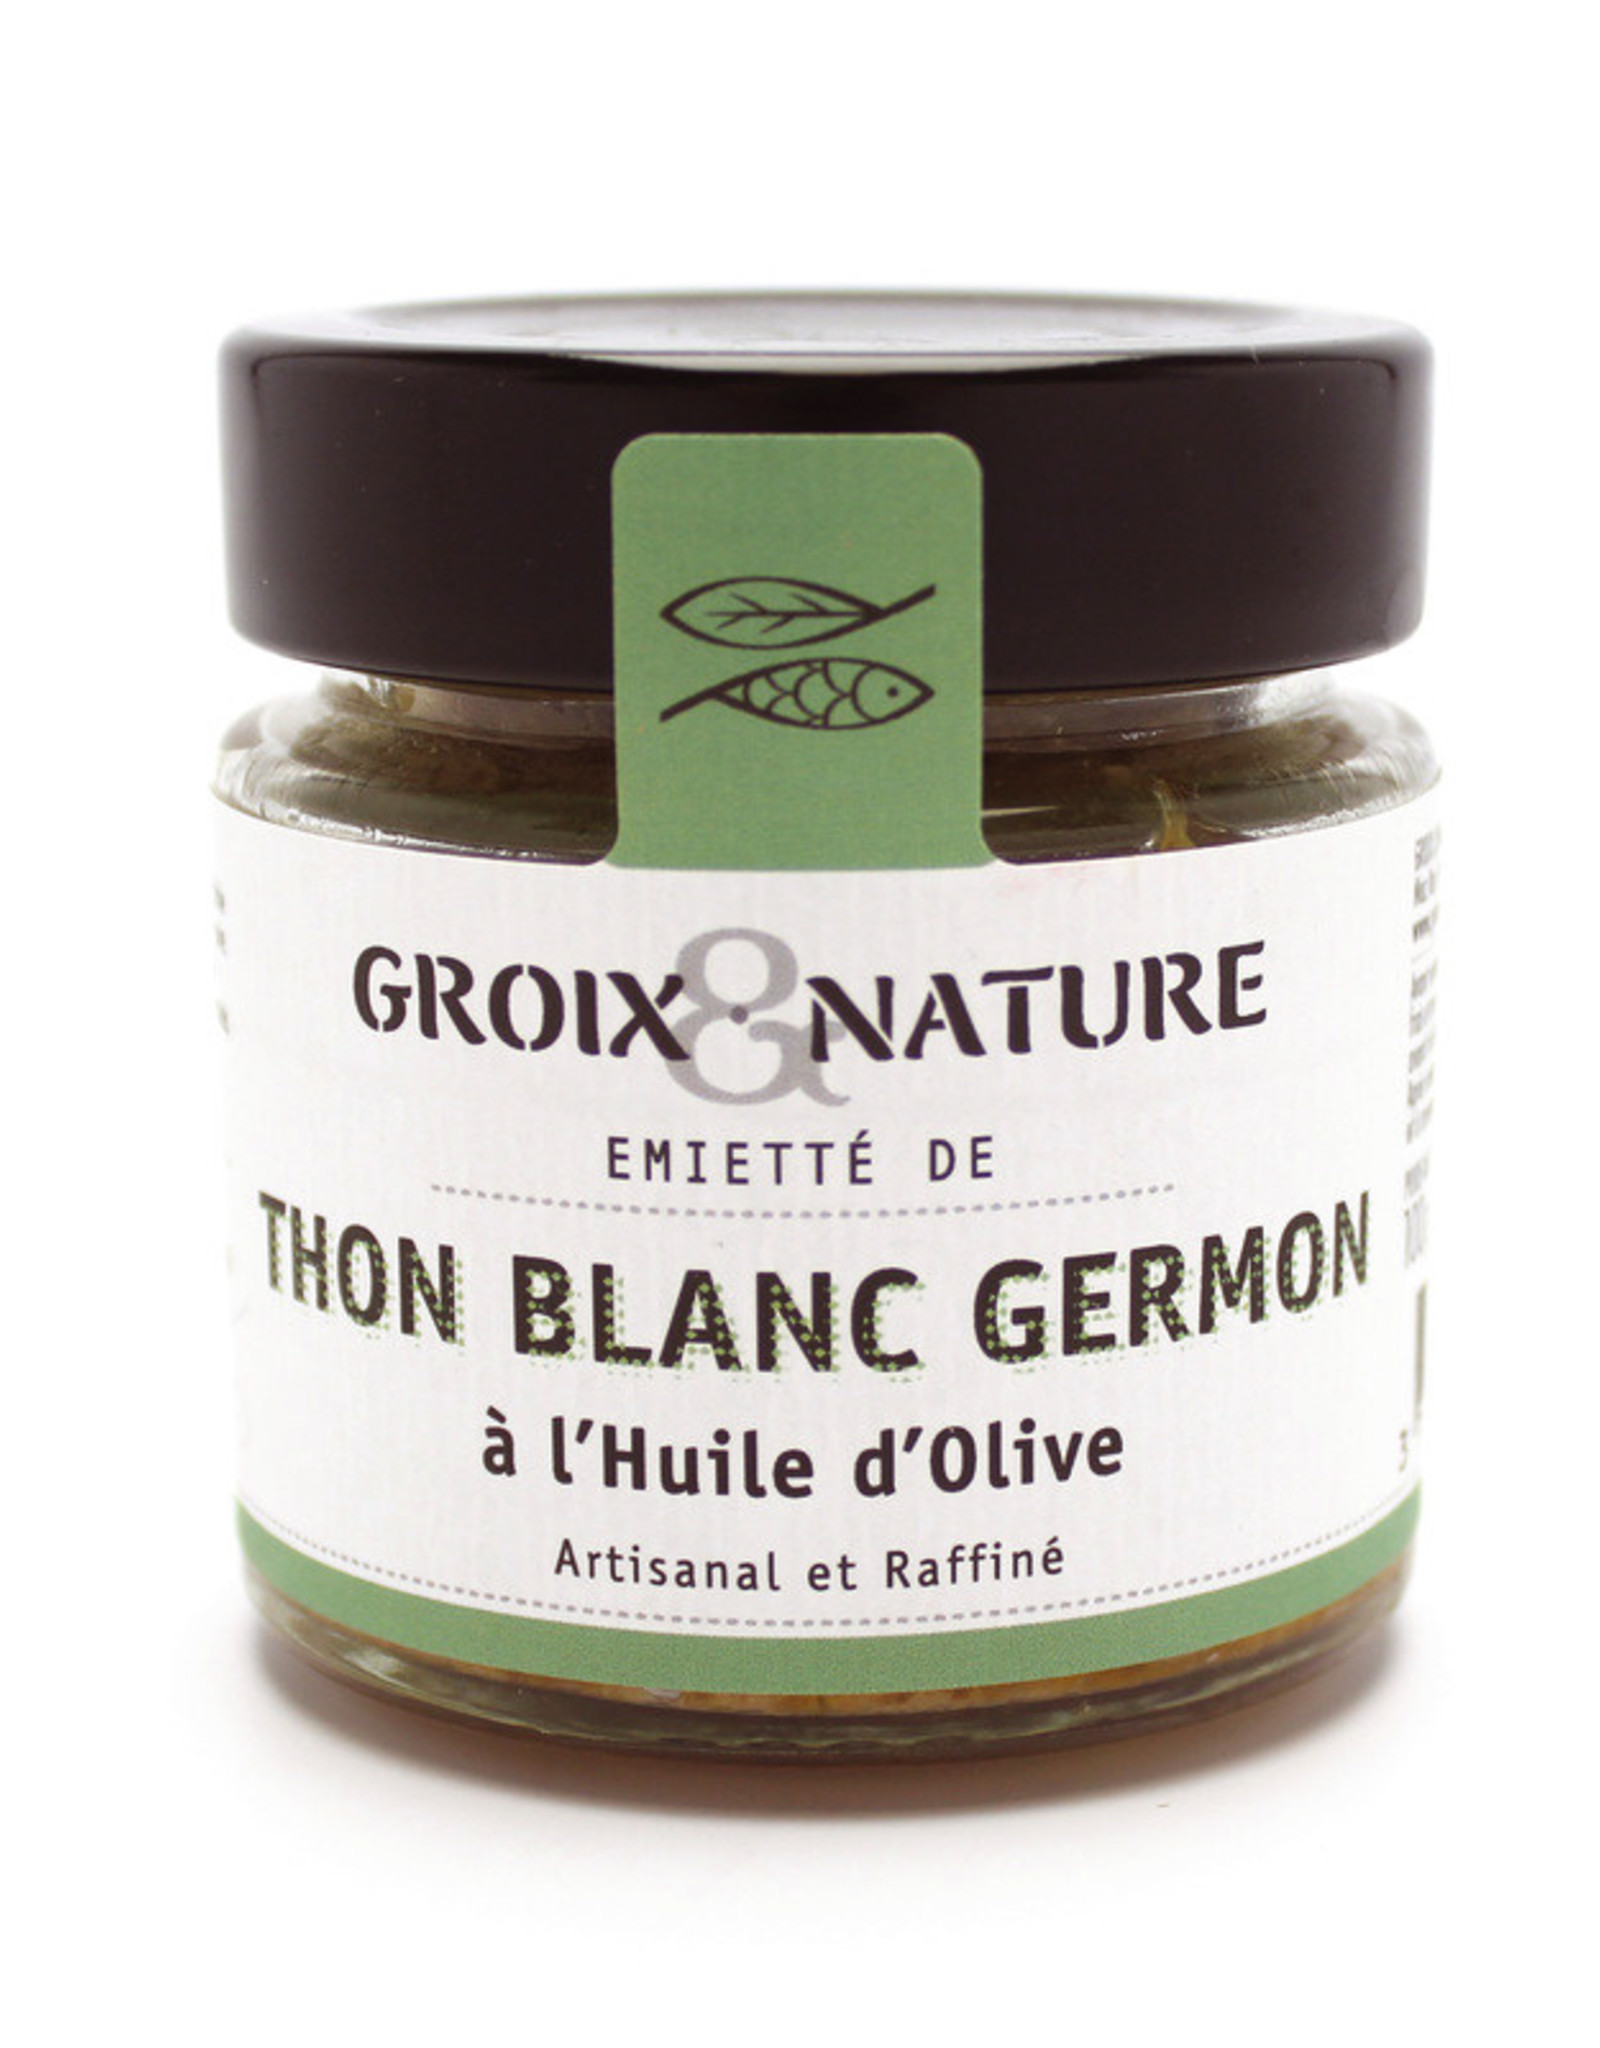 Groix Nature Groix Tuna in Olive Oil